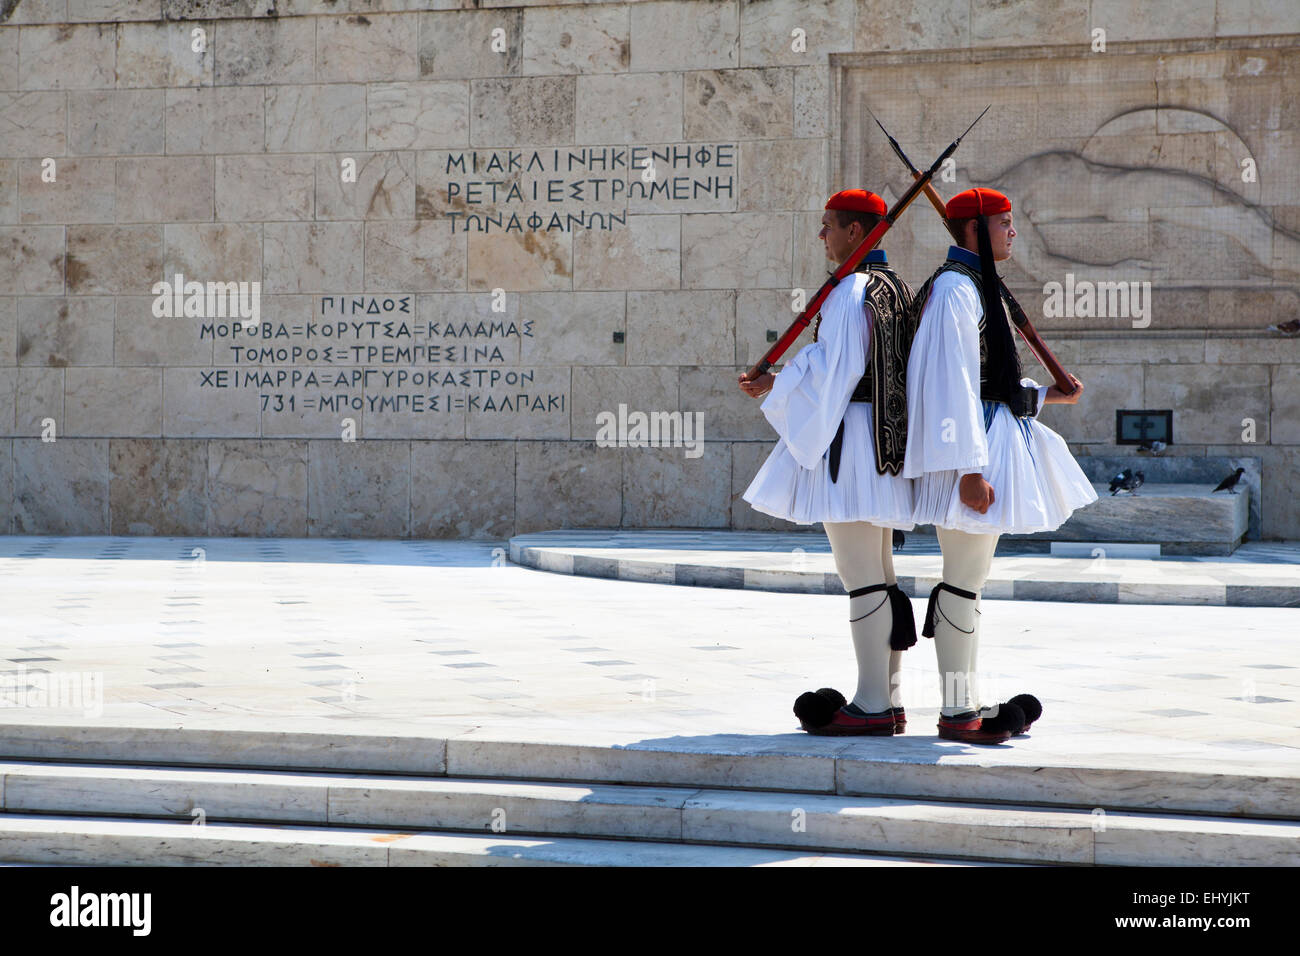 Zwei Evzonen bewacht das griechische Parlament in Athen, Griechenland. Stockfoto